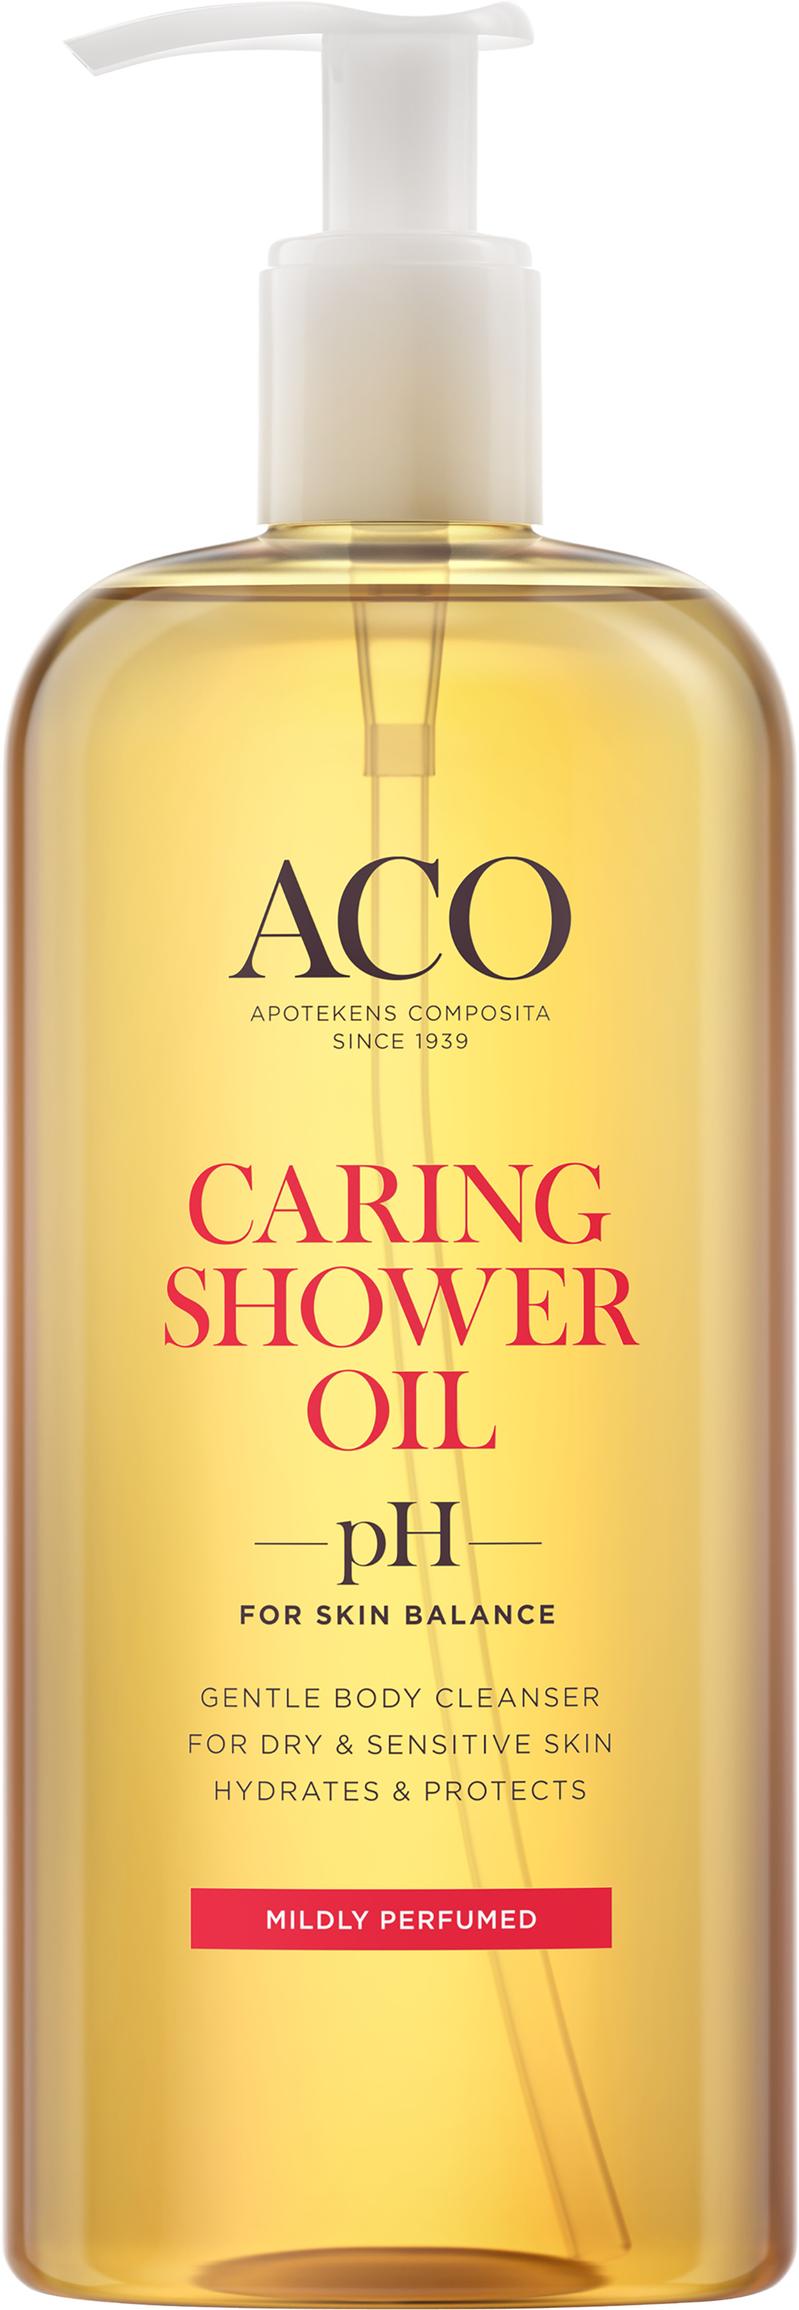 ACO Caring Shower Oil parfymerad 400 ml för 99 kr på Apotek Hjärtat